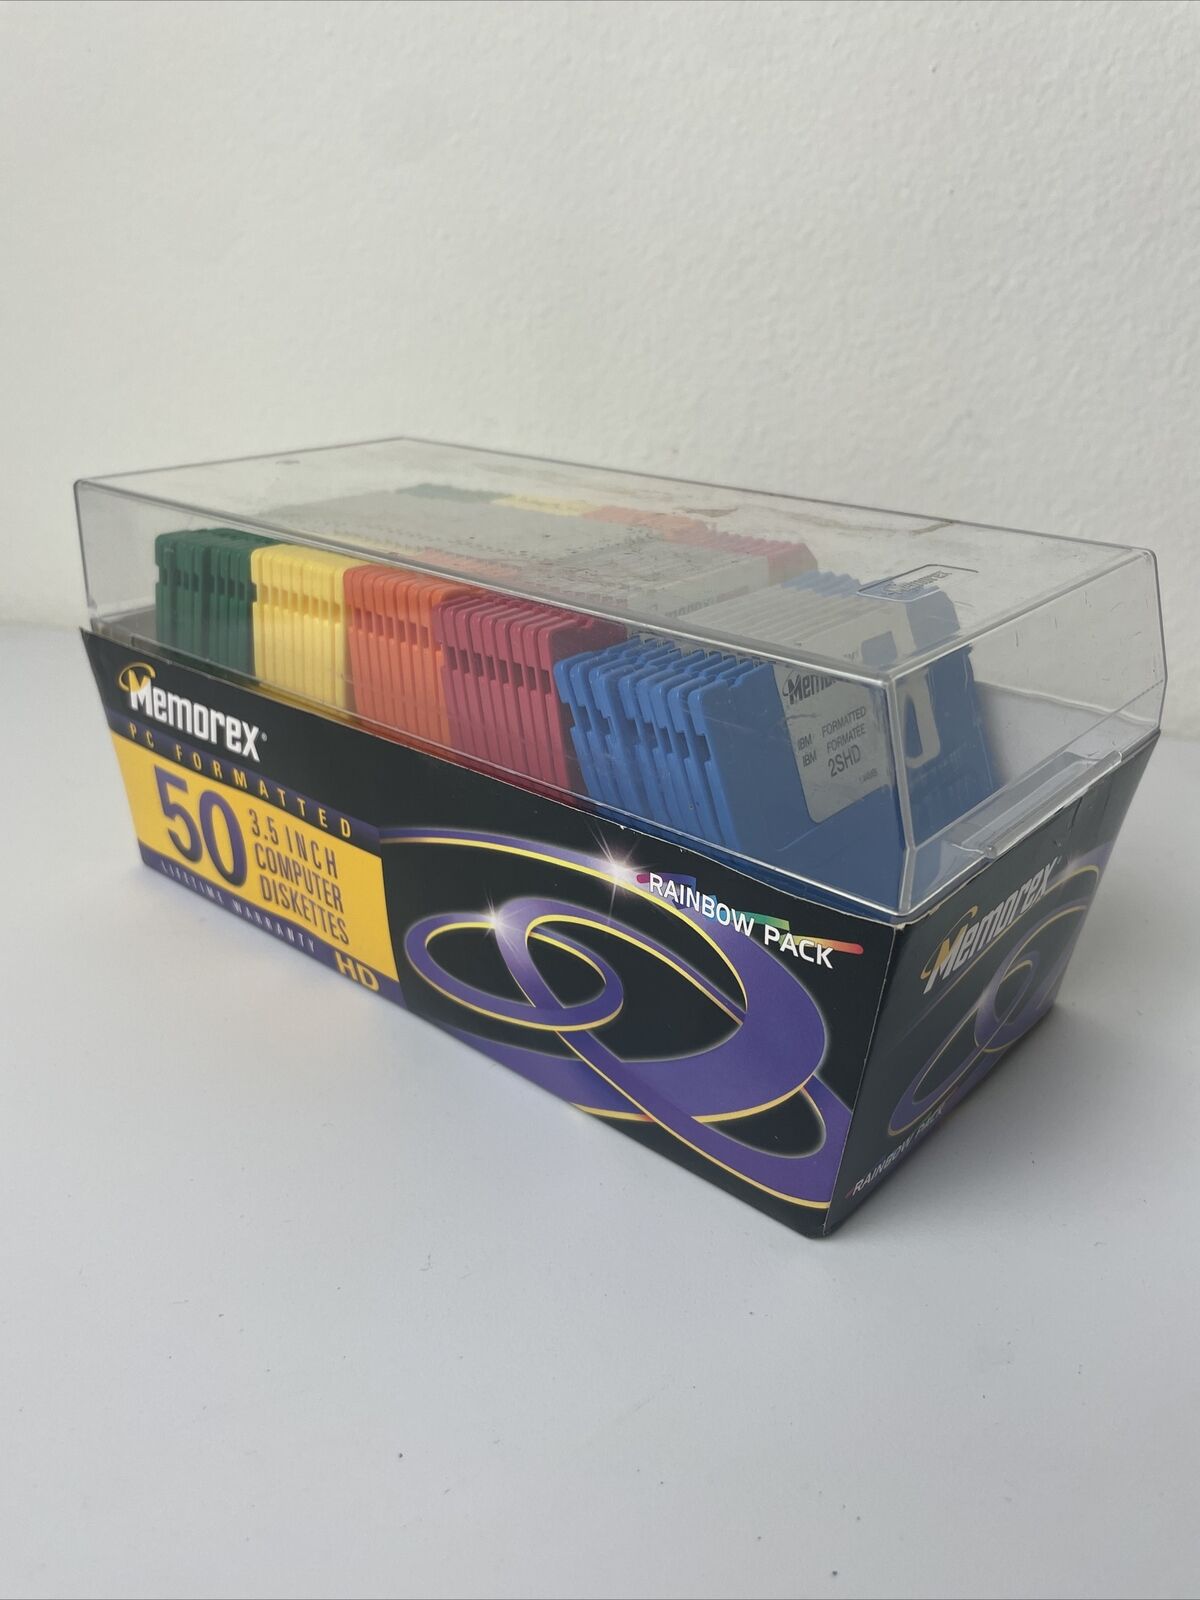 45 (not 50) Unused Memorex 2SHD Computer Floppy Disk 3.5” Rainbow Pack